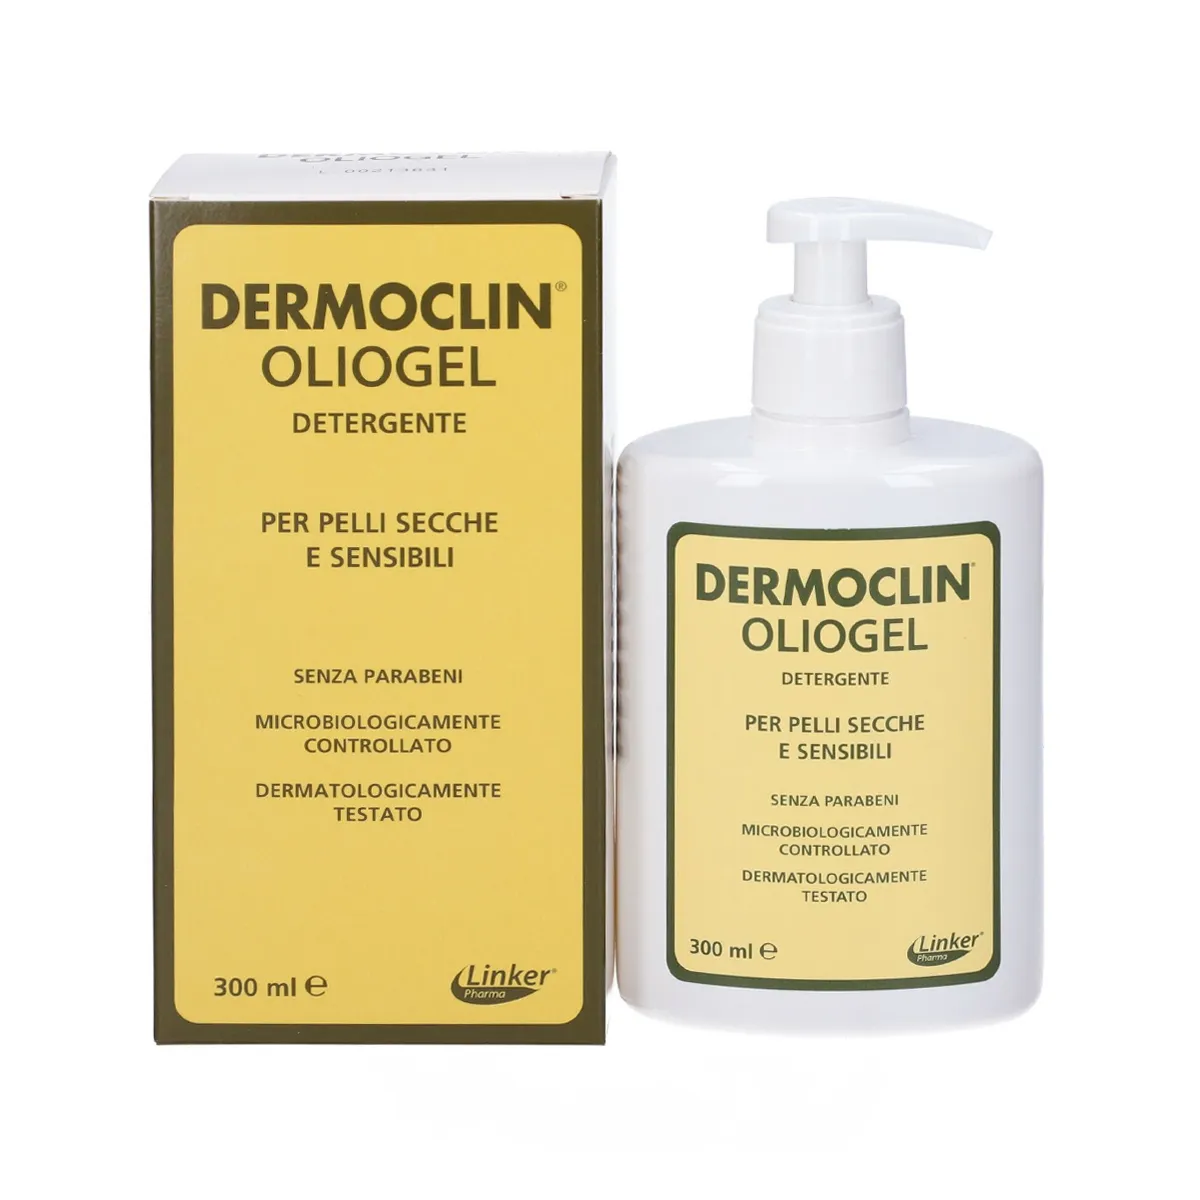 Dermoclin Oliogel Detergente Pelli Secche E Sensibili 300ml